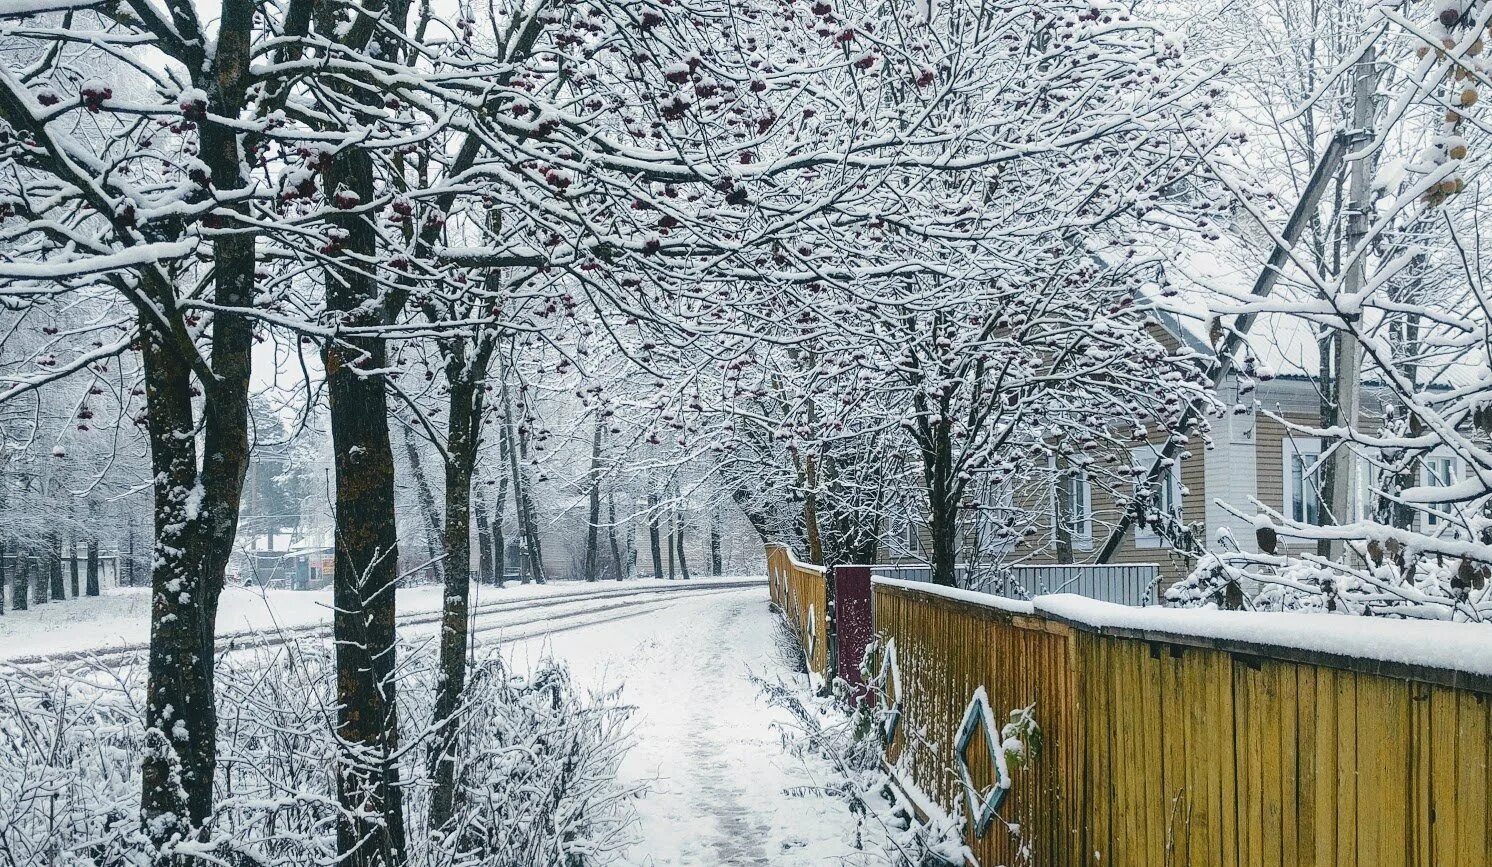 Вяземский снег. Ранняя зима в городе. Деревья под снегом. Фон зима. Максатиха зимой.